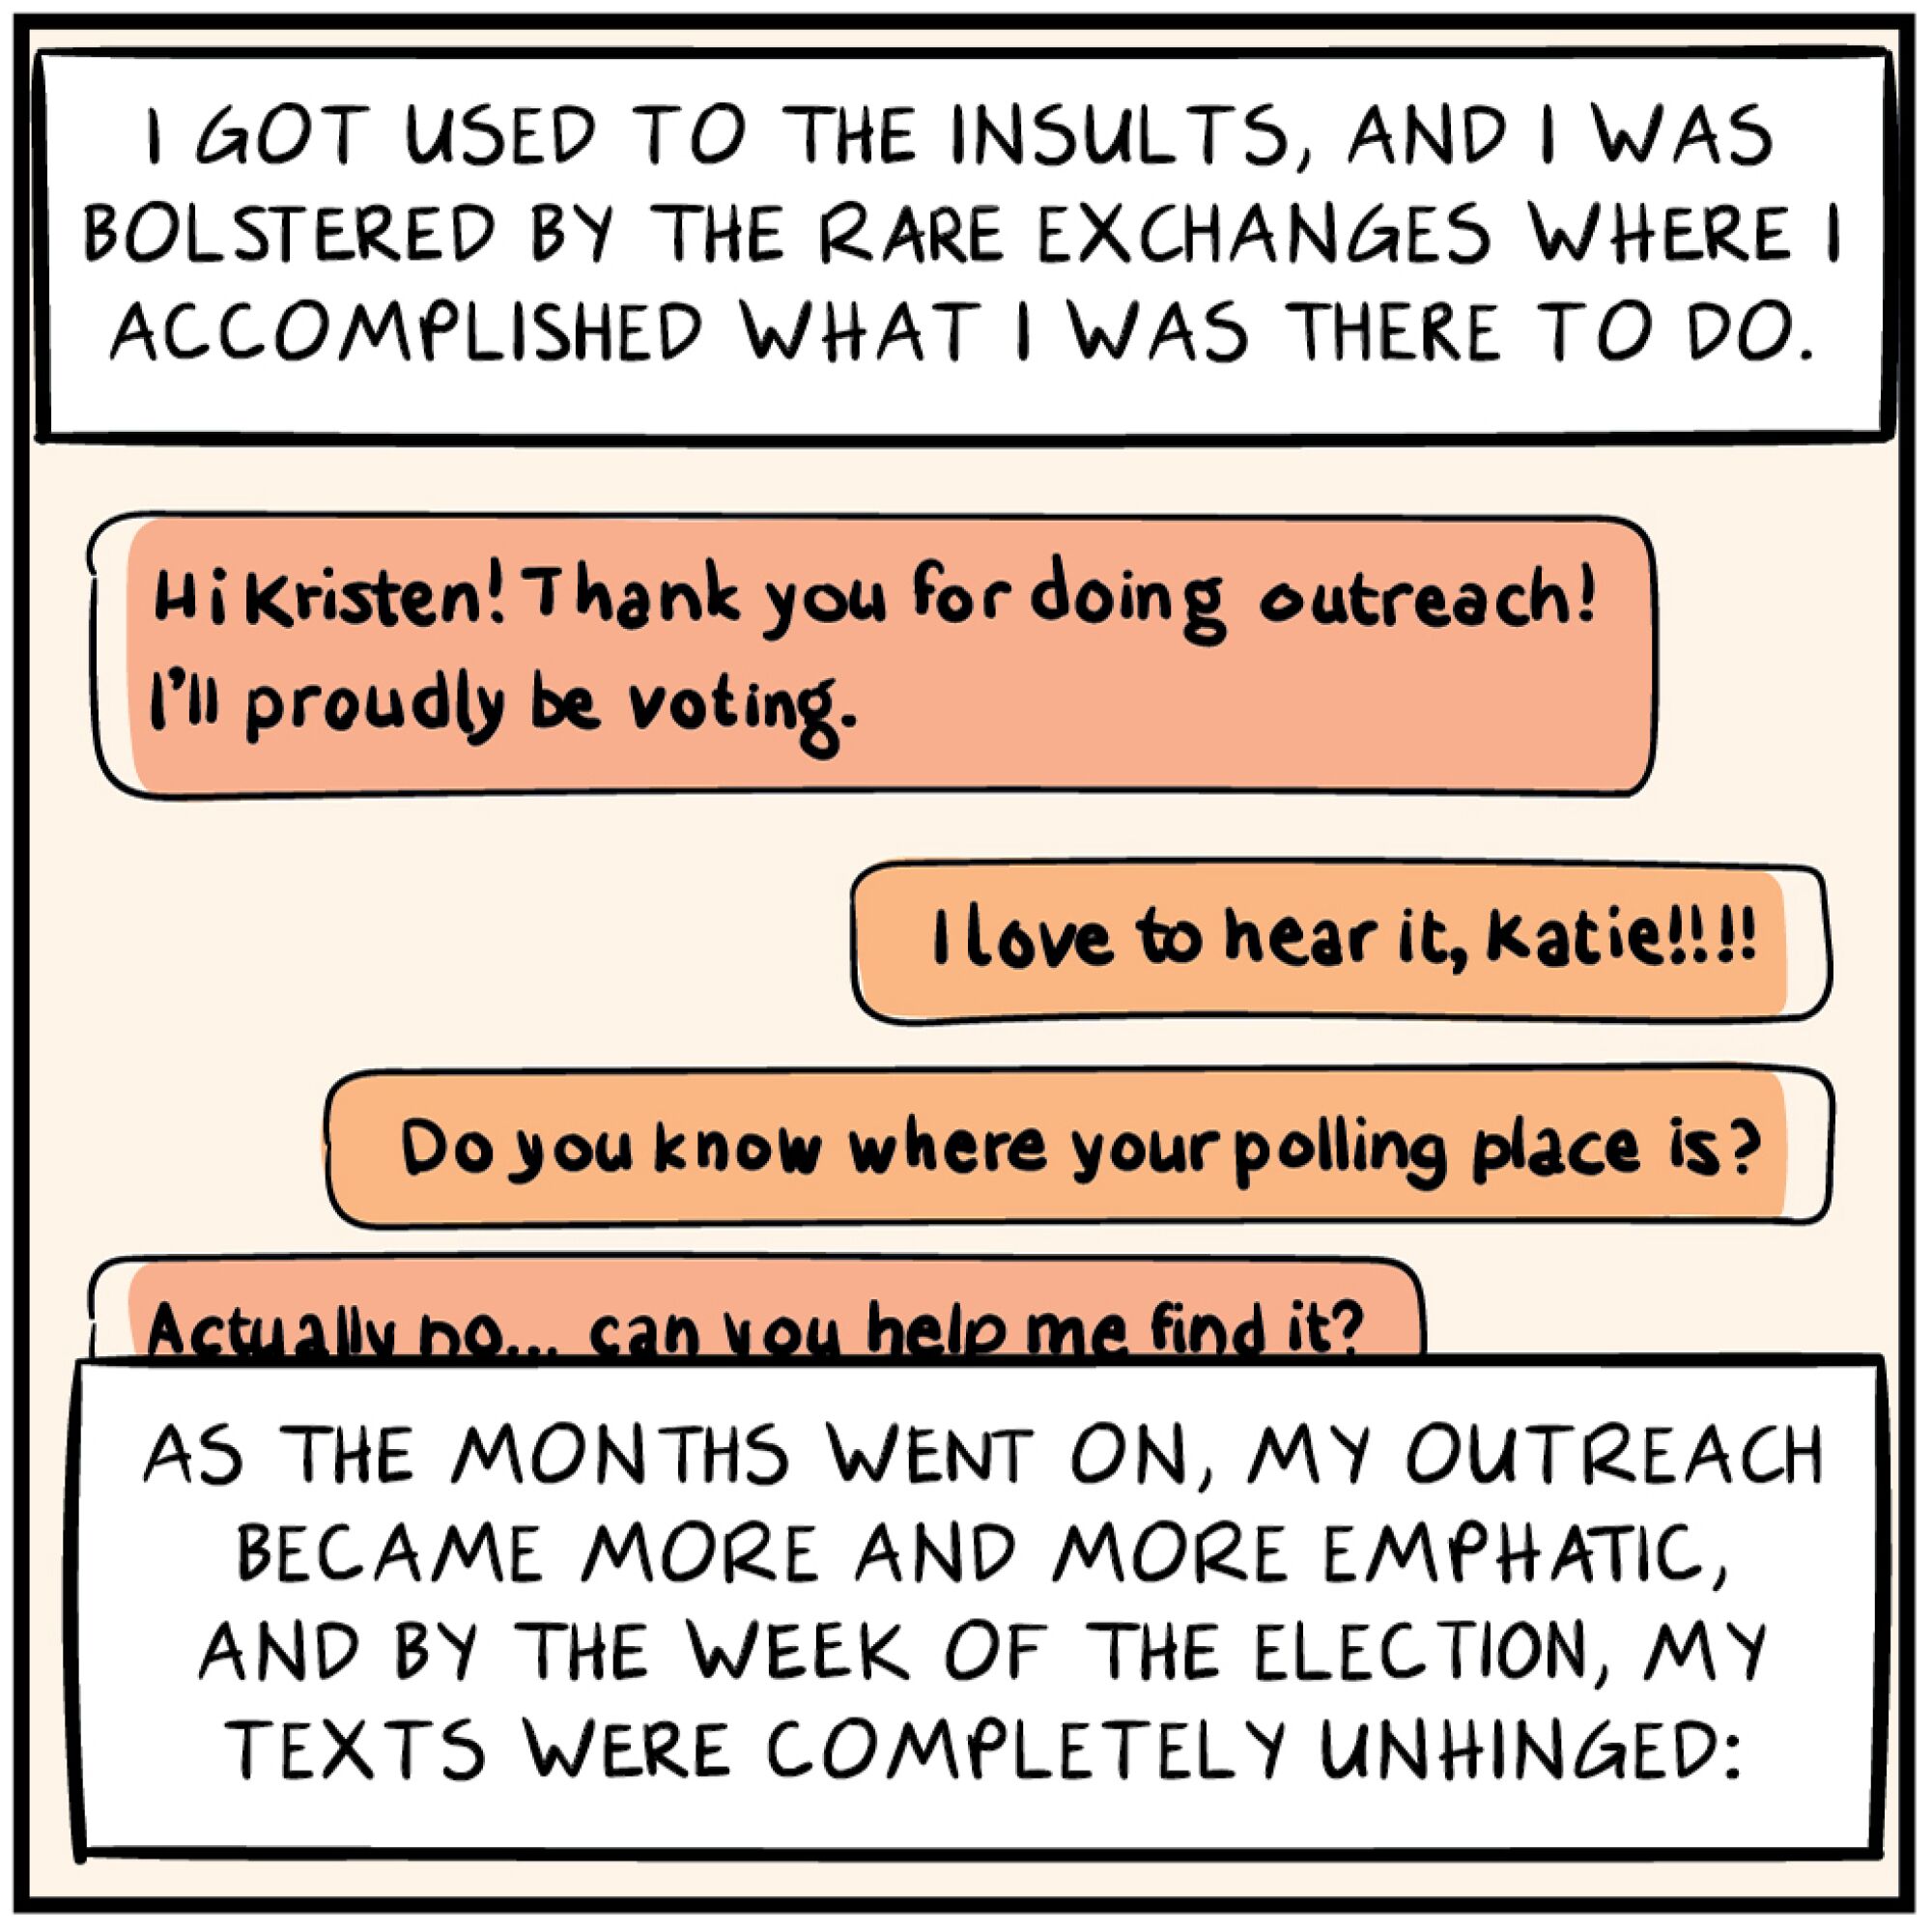 Comic panel describing increasingly emphatic text responses